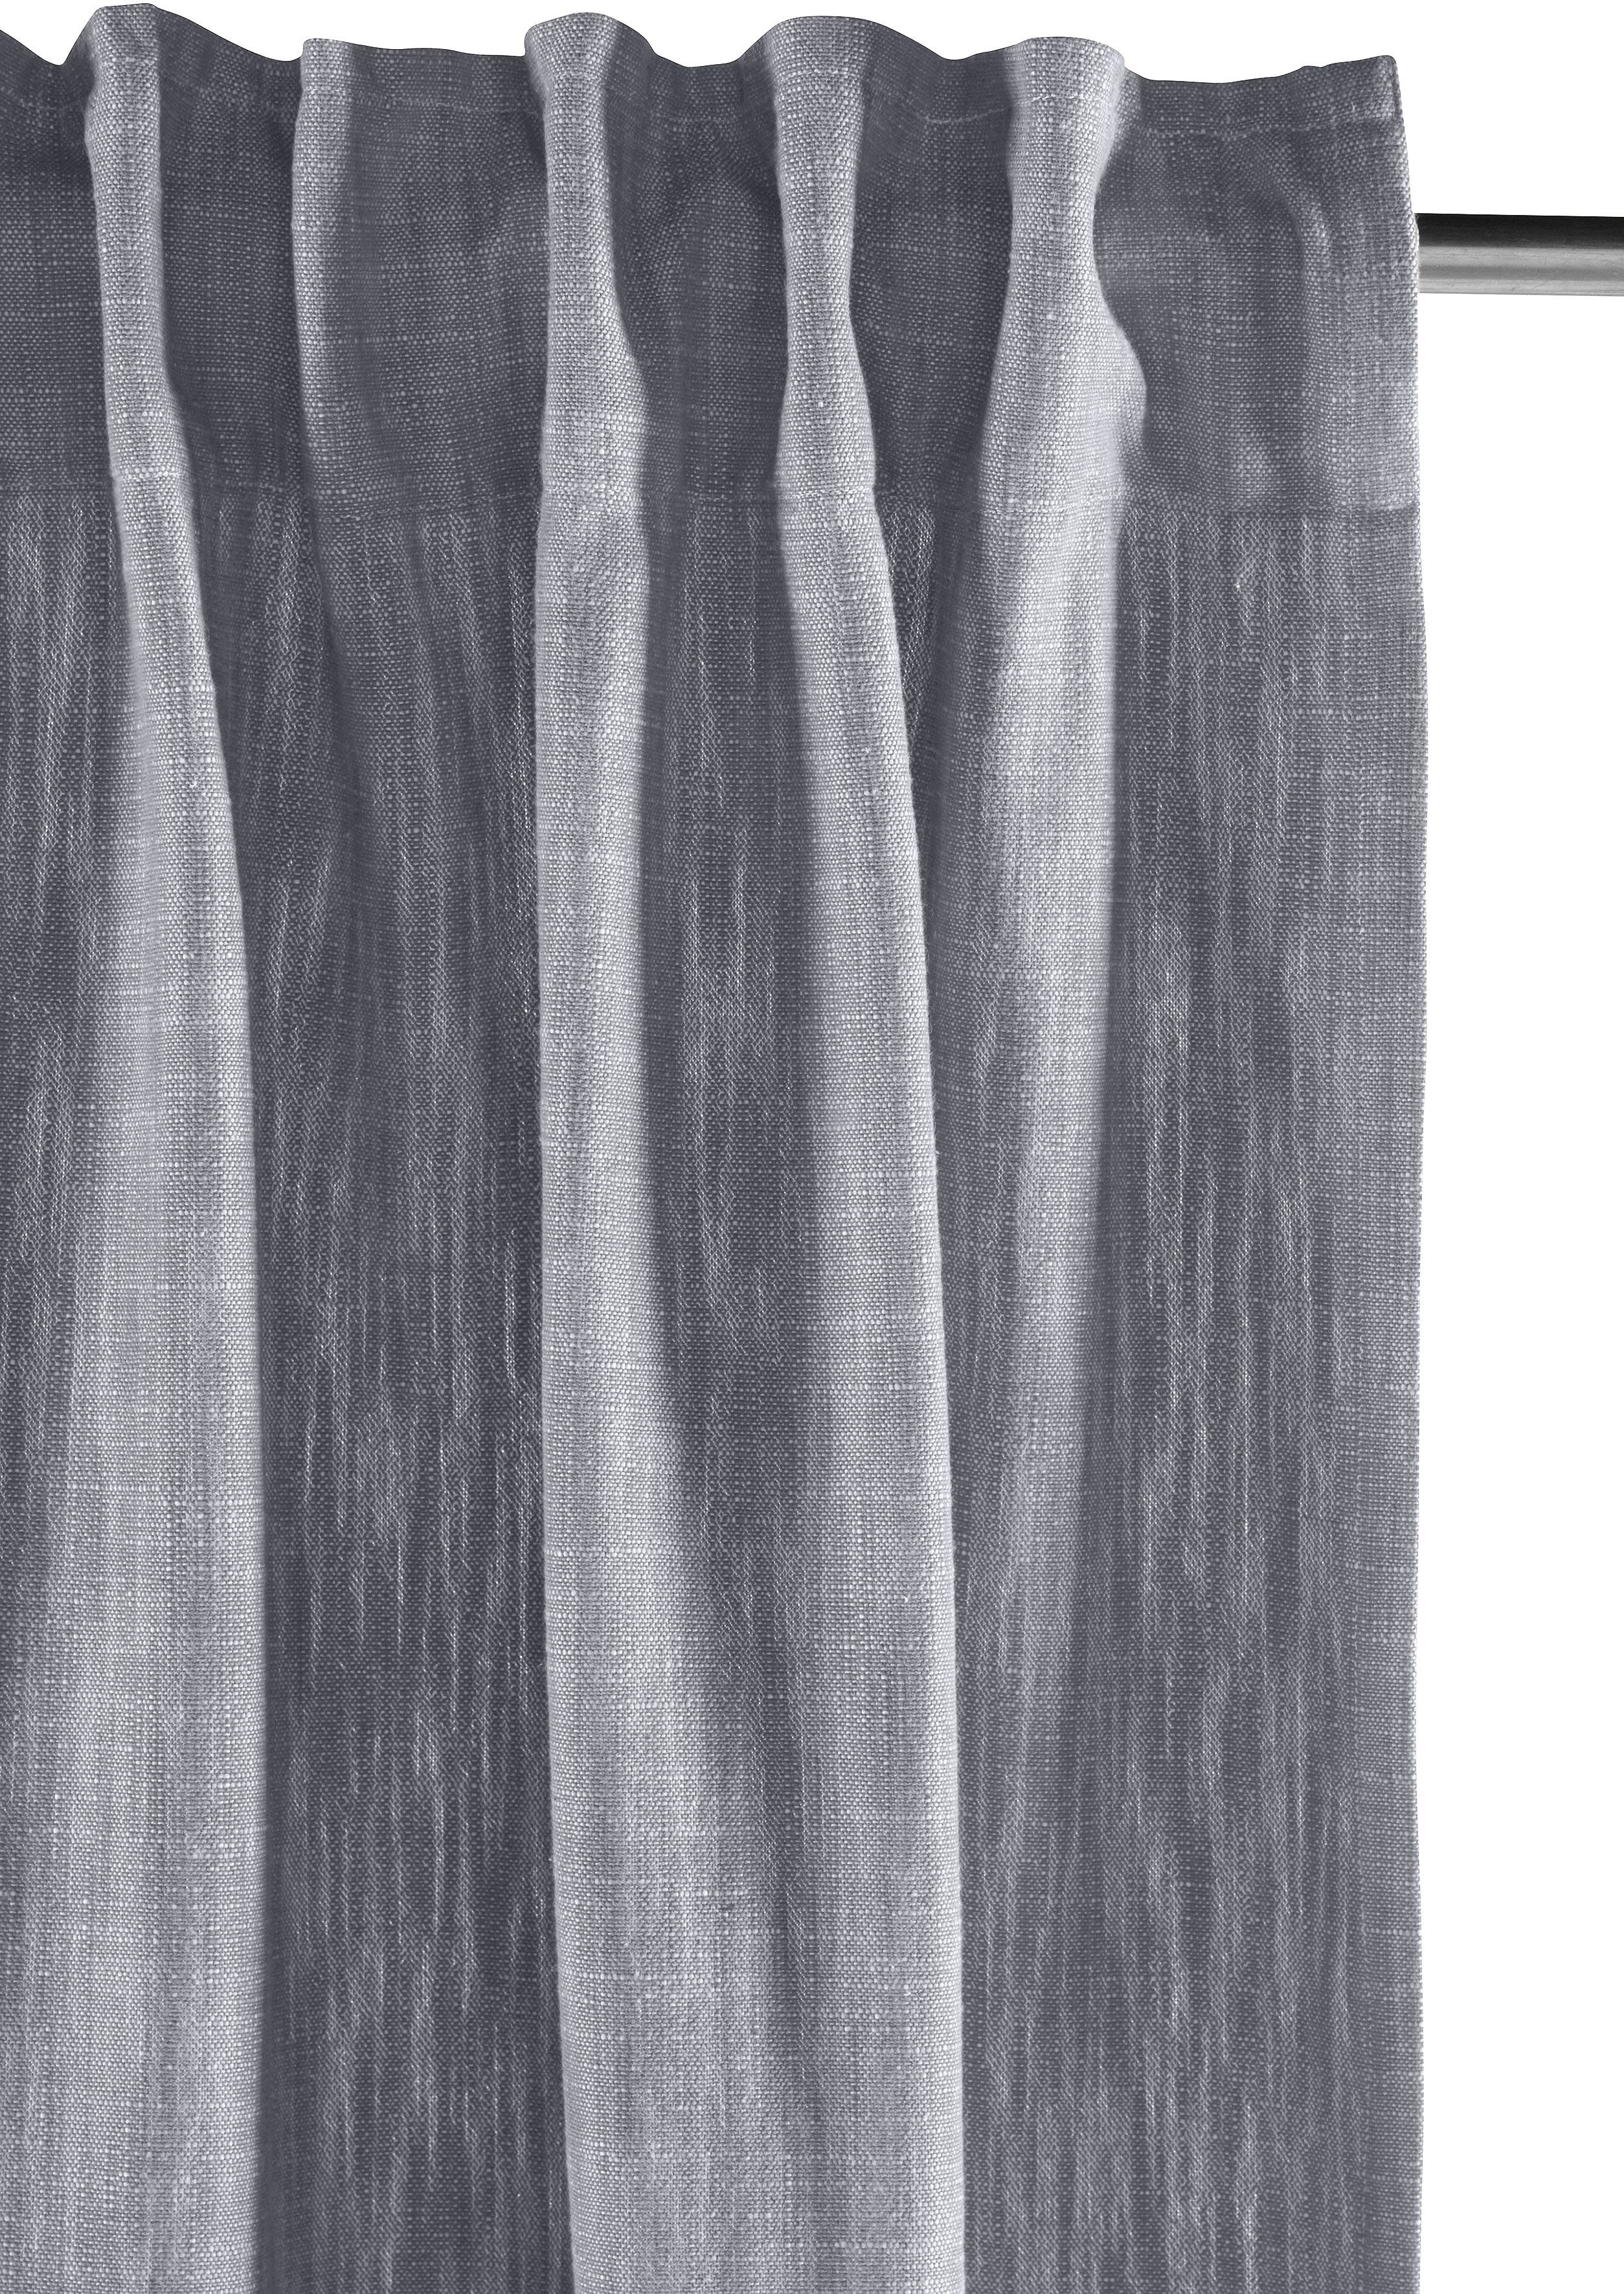 elbgestoeber, Vorhang Multifunktionsband blickdicht St), Elbgarn, (1 grau